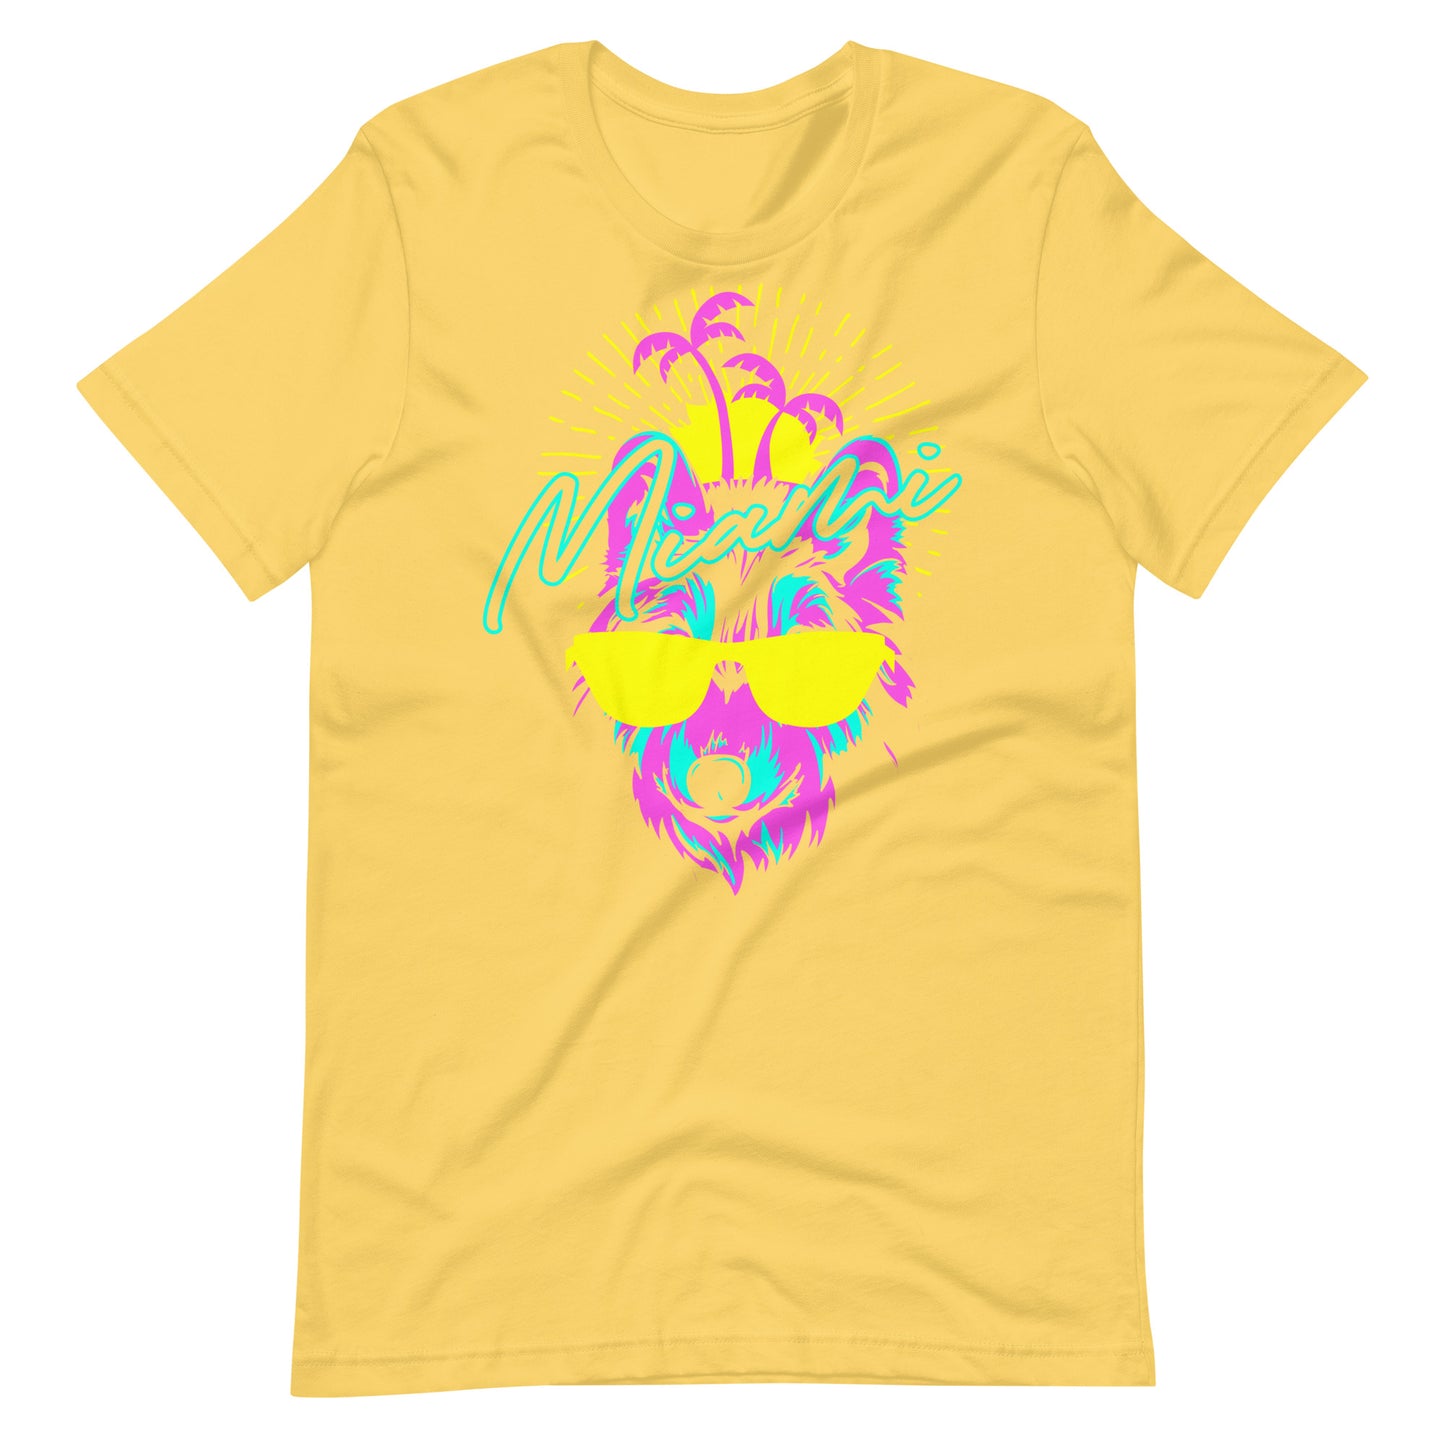 Printagon - Miami Wolf - Unisex T-shirt - Yellow / S